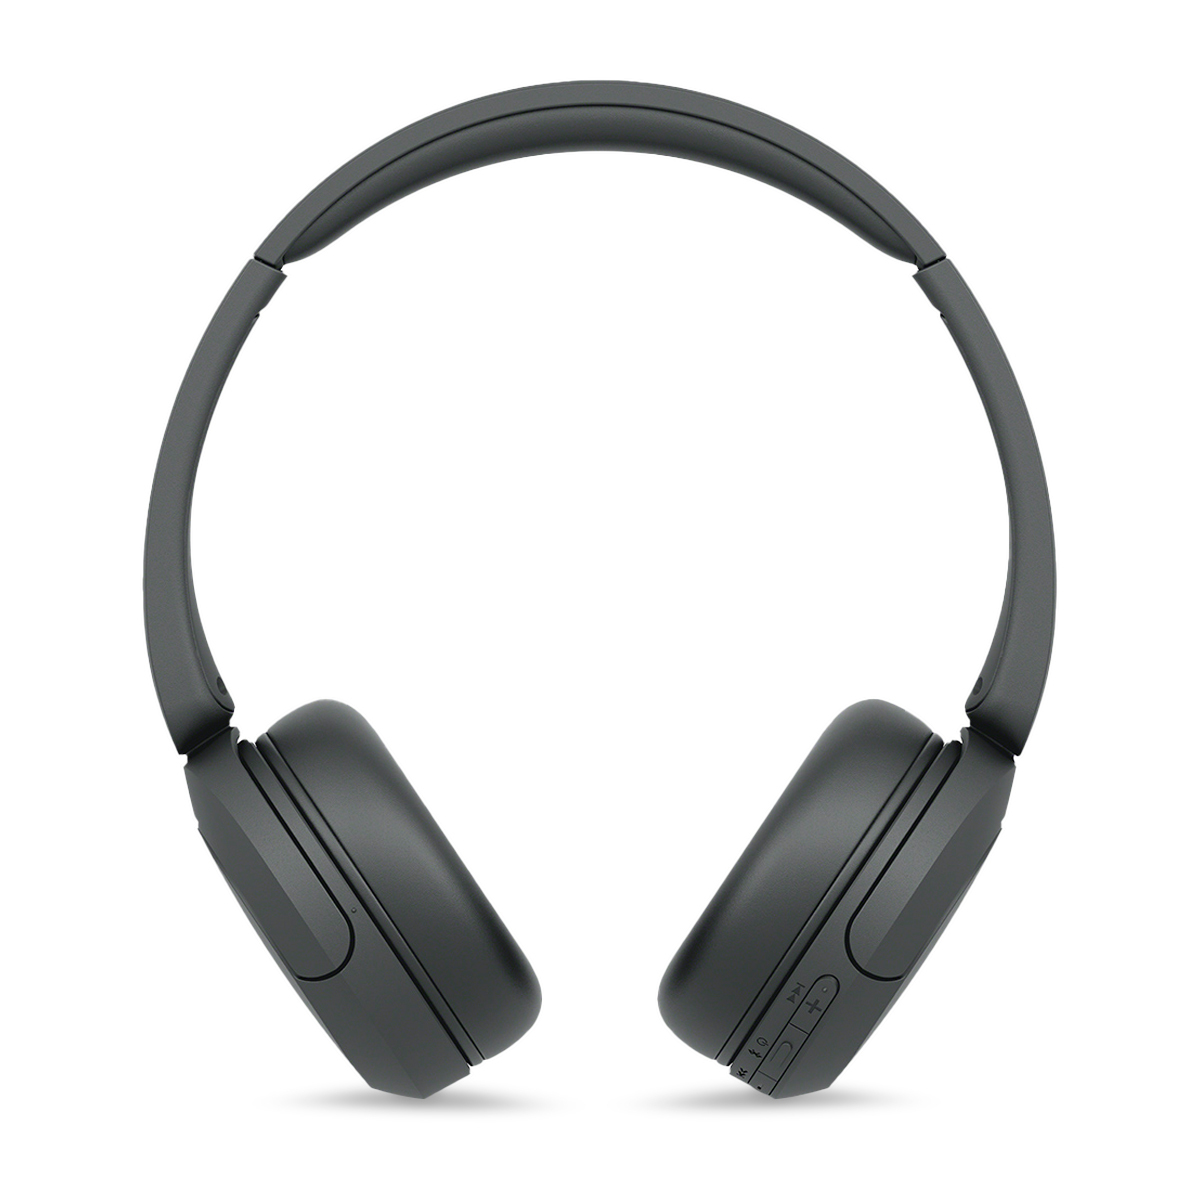 Audífonos de Diadema Bluetooth Sony WH-CH520 Negro